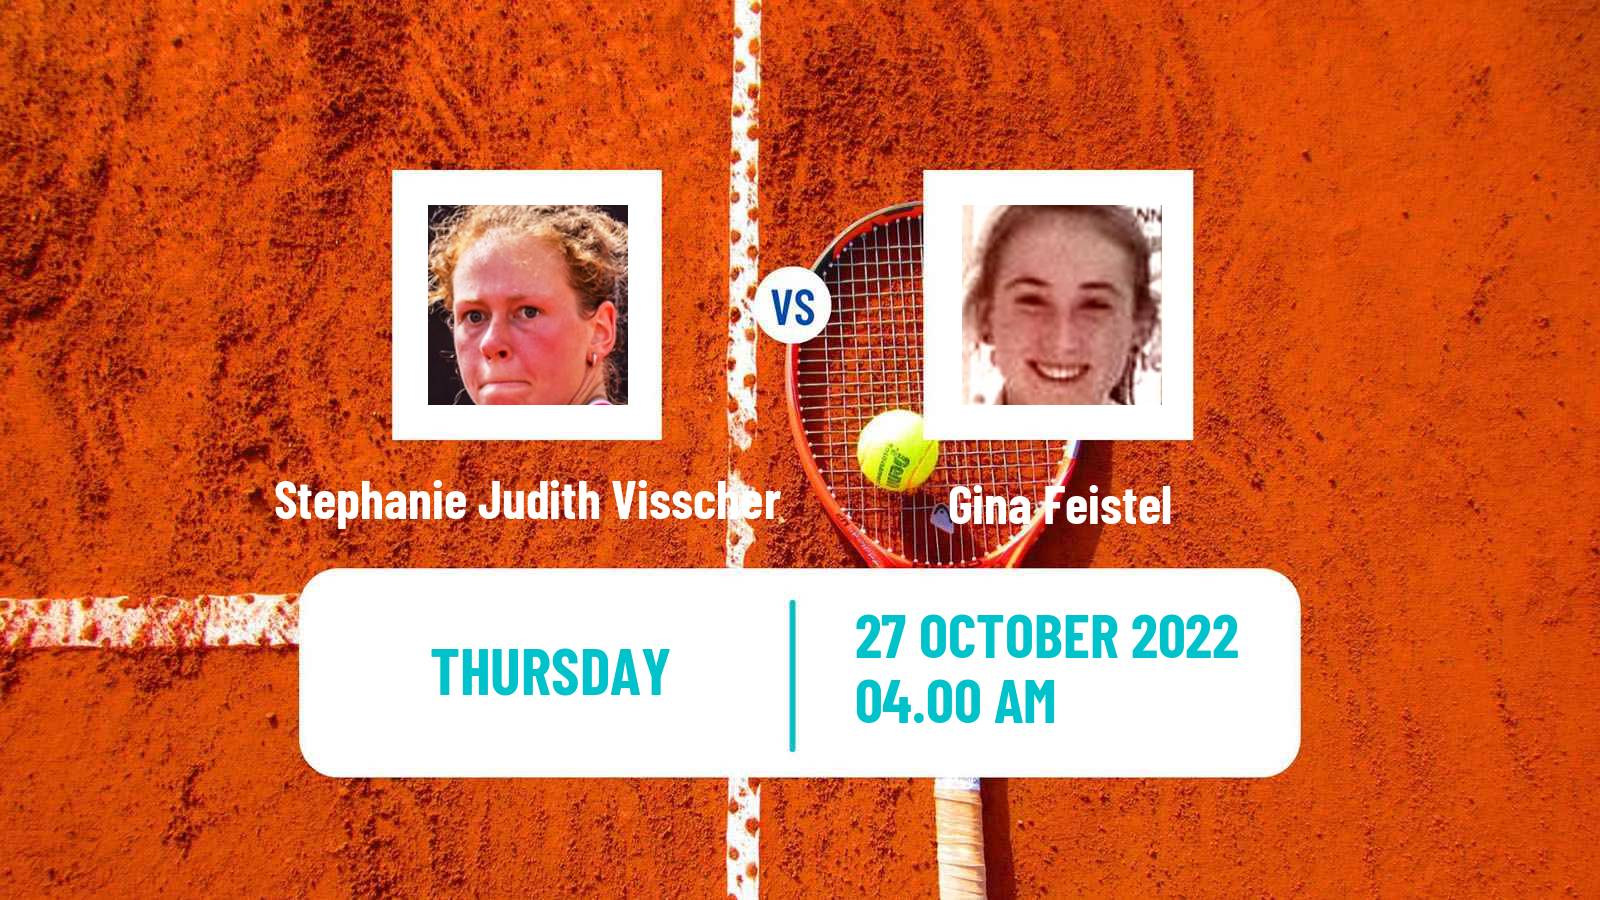 Tennis ITF Tournaments Stephanie Judith Visscher - Gina Feistel